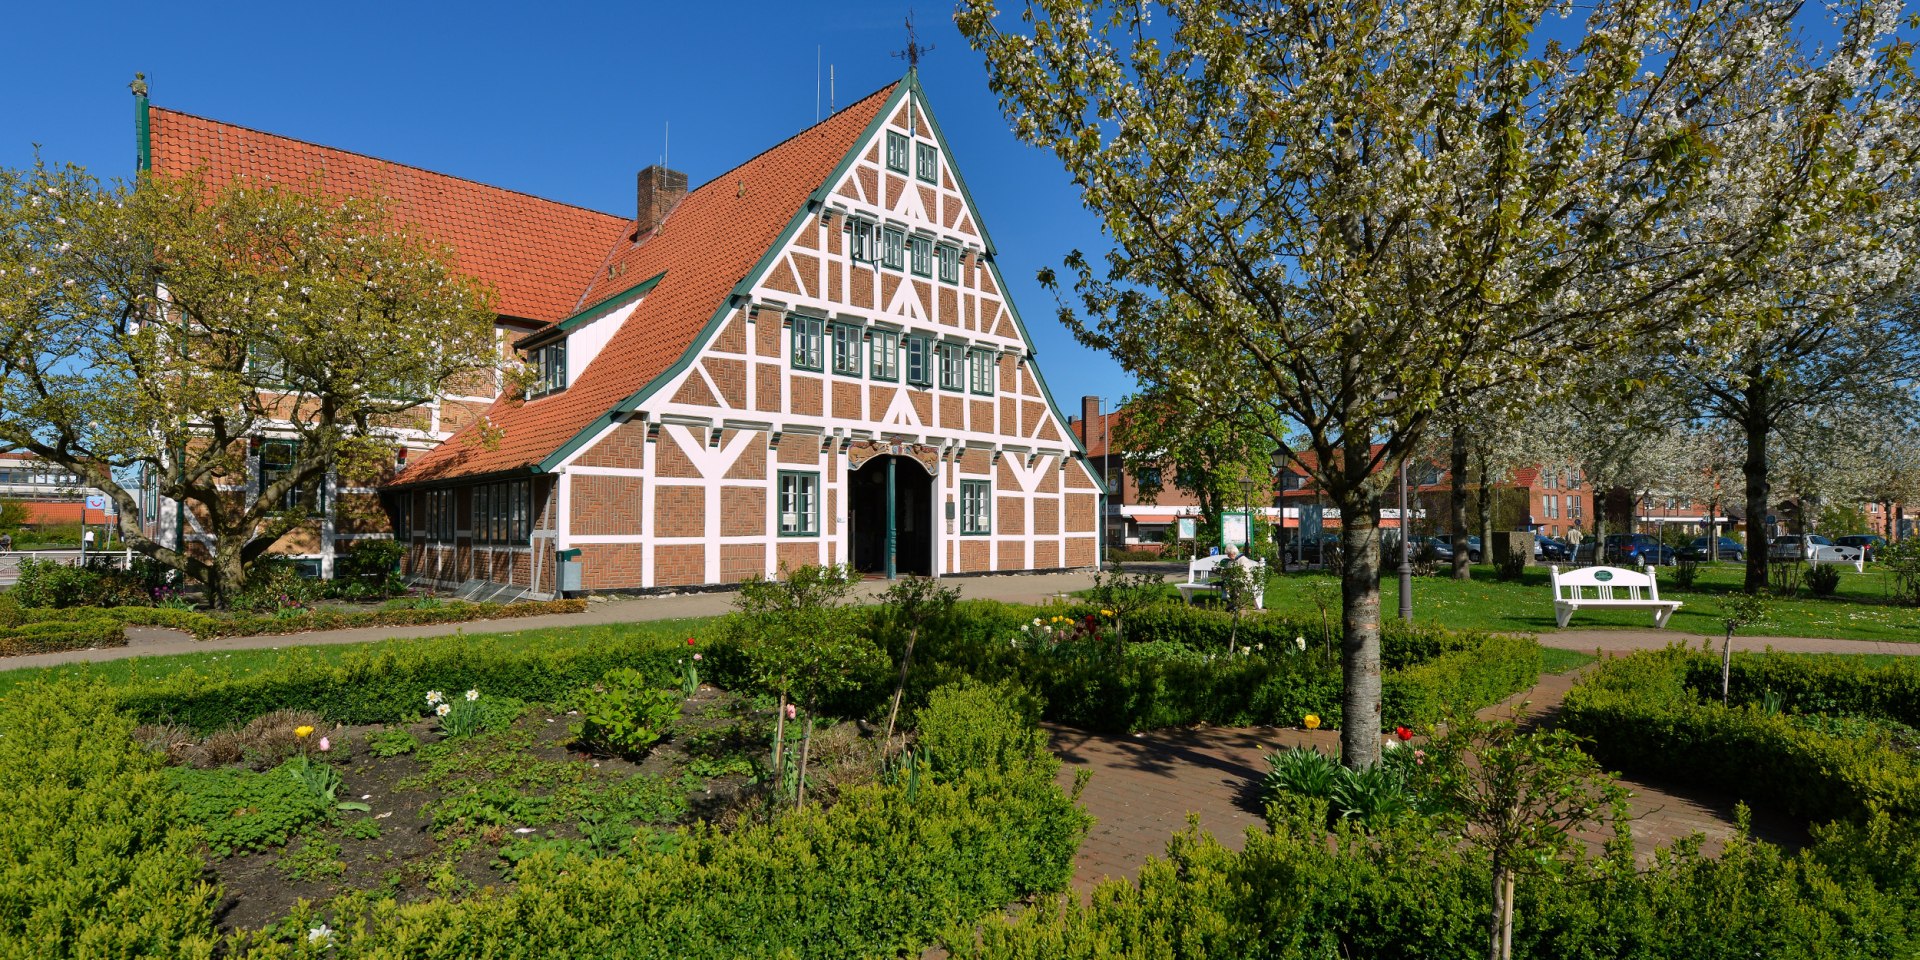 Gräfenhaus in Jork im Landkreis Stade, © TMN/Dieter Schinner